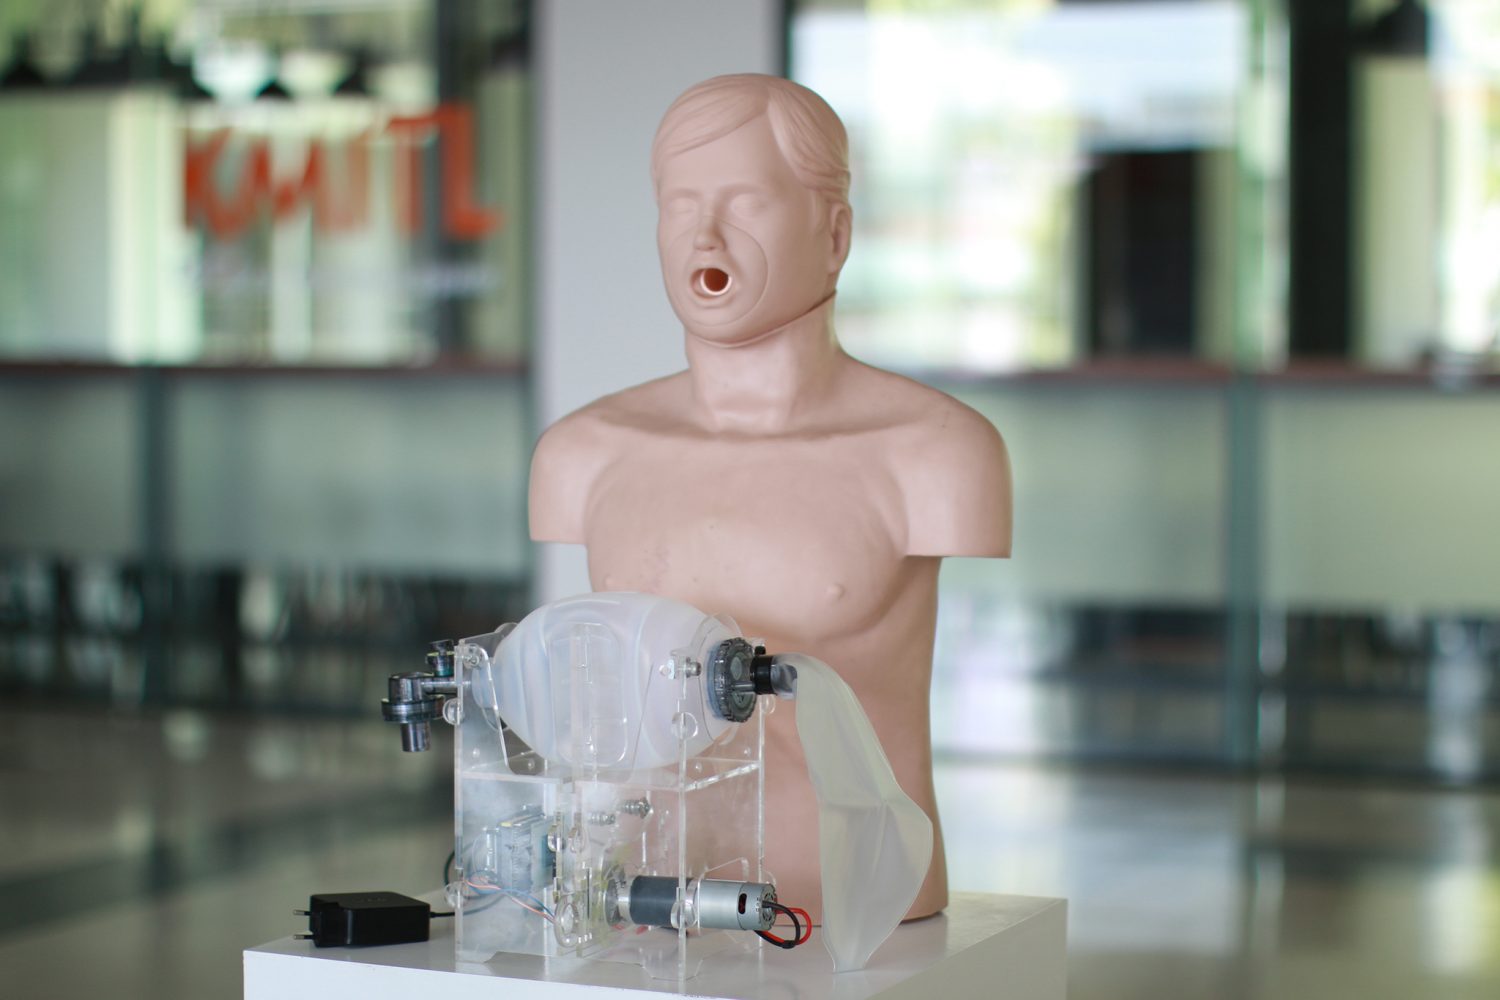 สจล. เตรียมส่งมอบเครื่องช่วยหายใจ GO Life Ventilator ล็อตแรกแก่กทม. 20 ตัว รองรับผู้ป่วยโควิดทุกระดับ